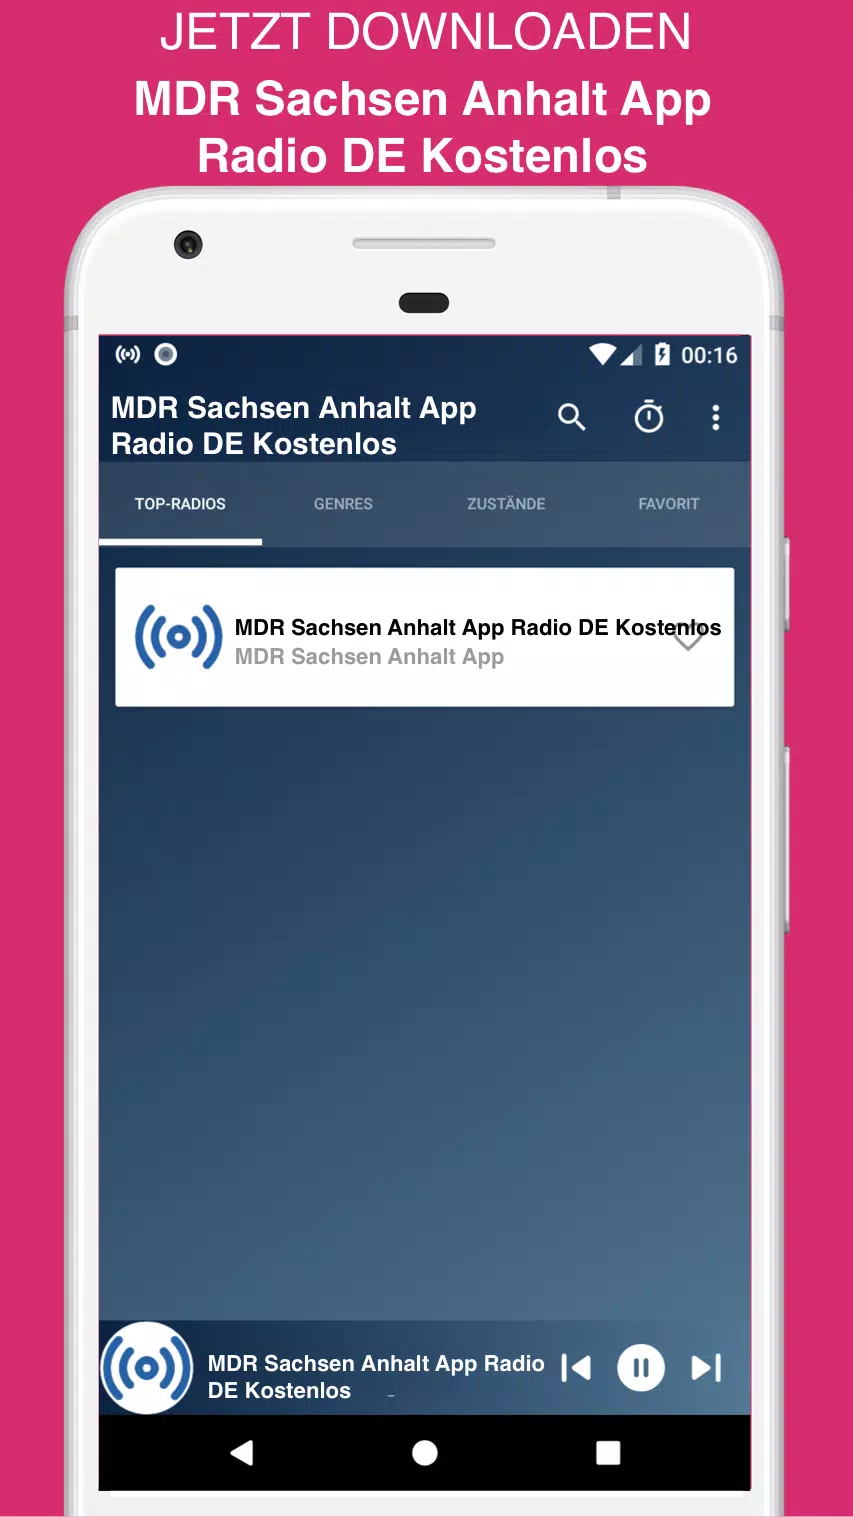 Descarga de APK de MDR Sachsen Anhalt App Radio DE Kostenlos para Android